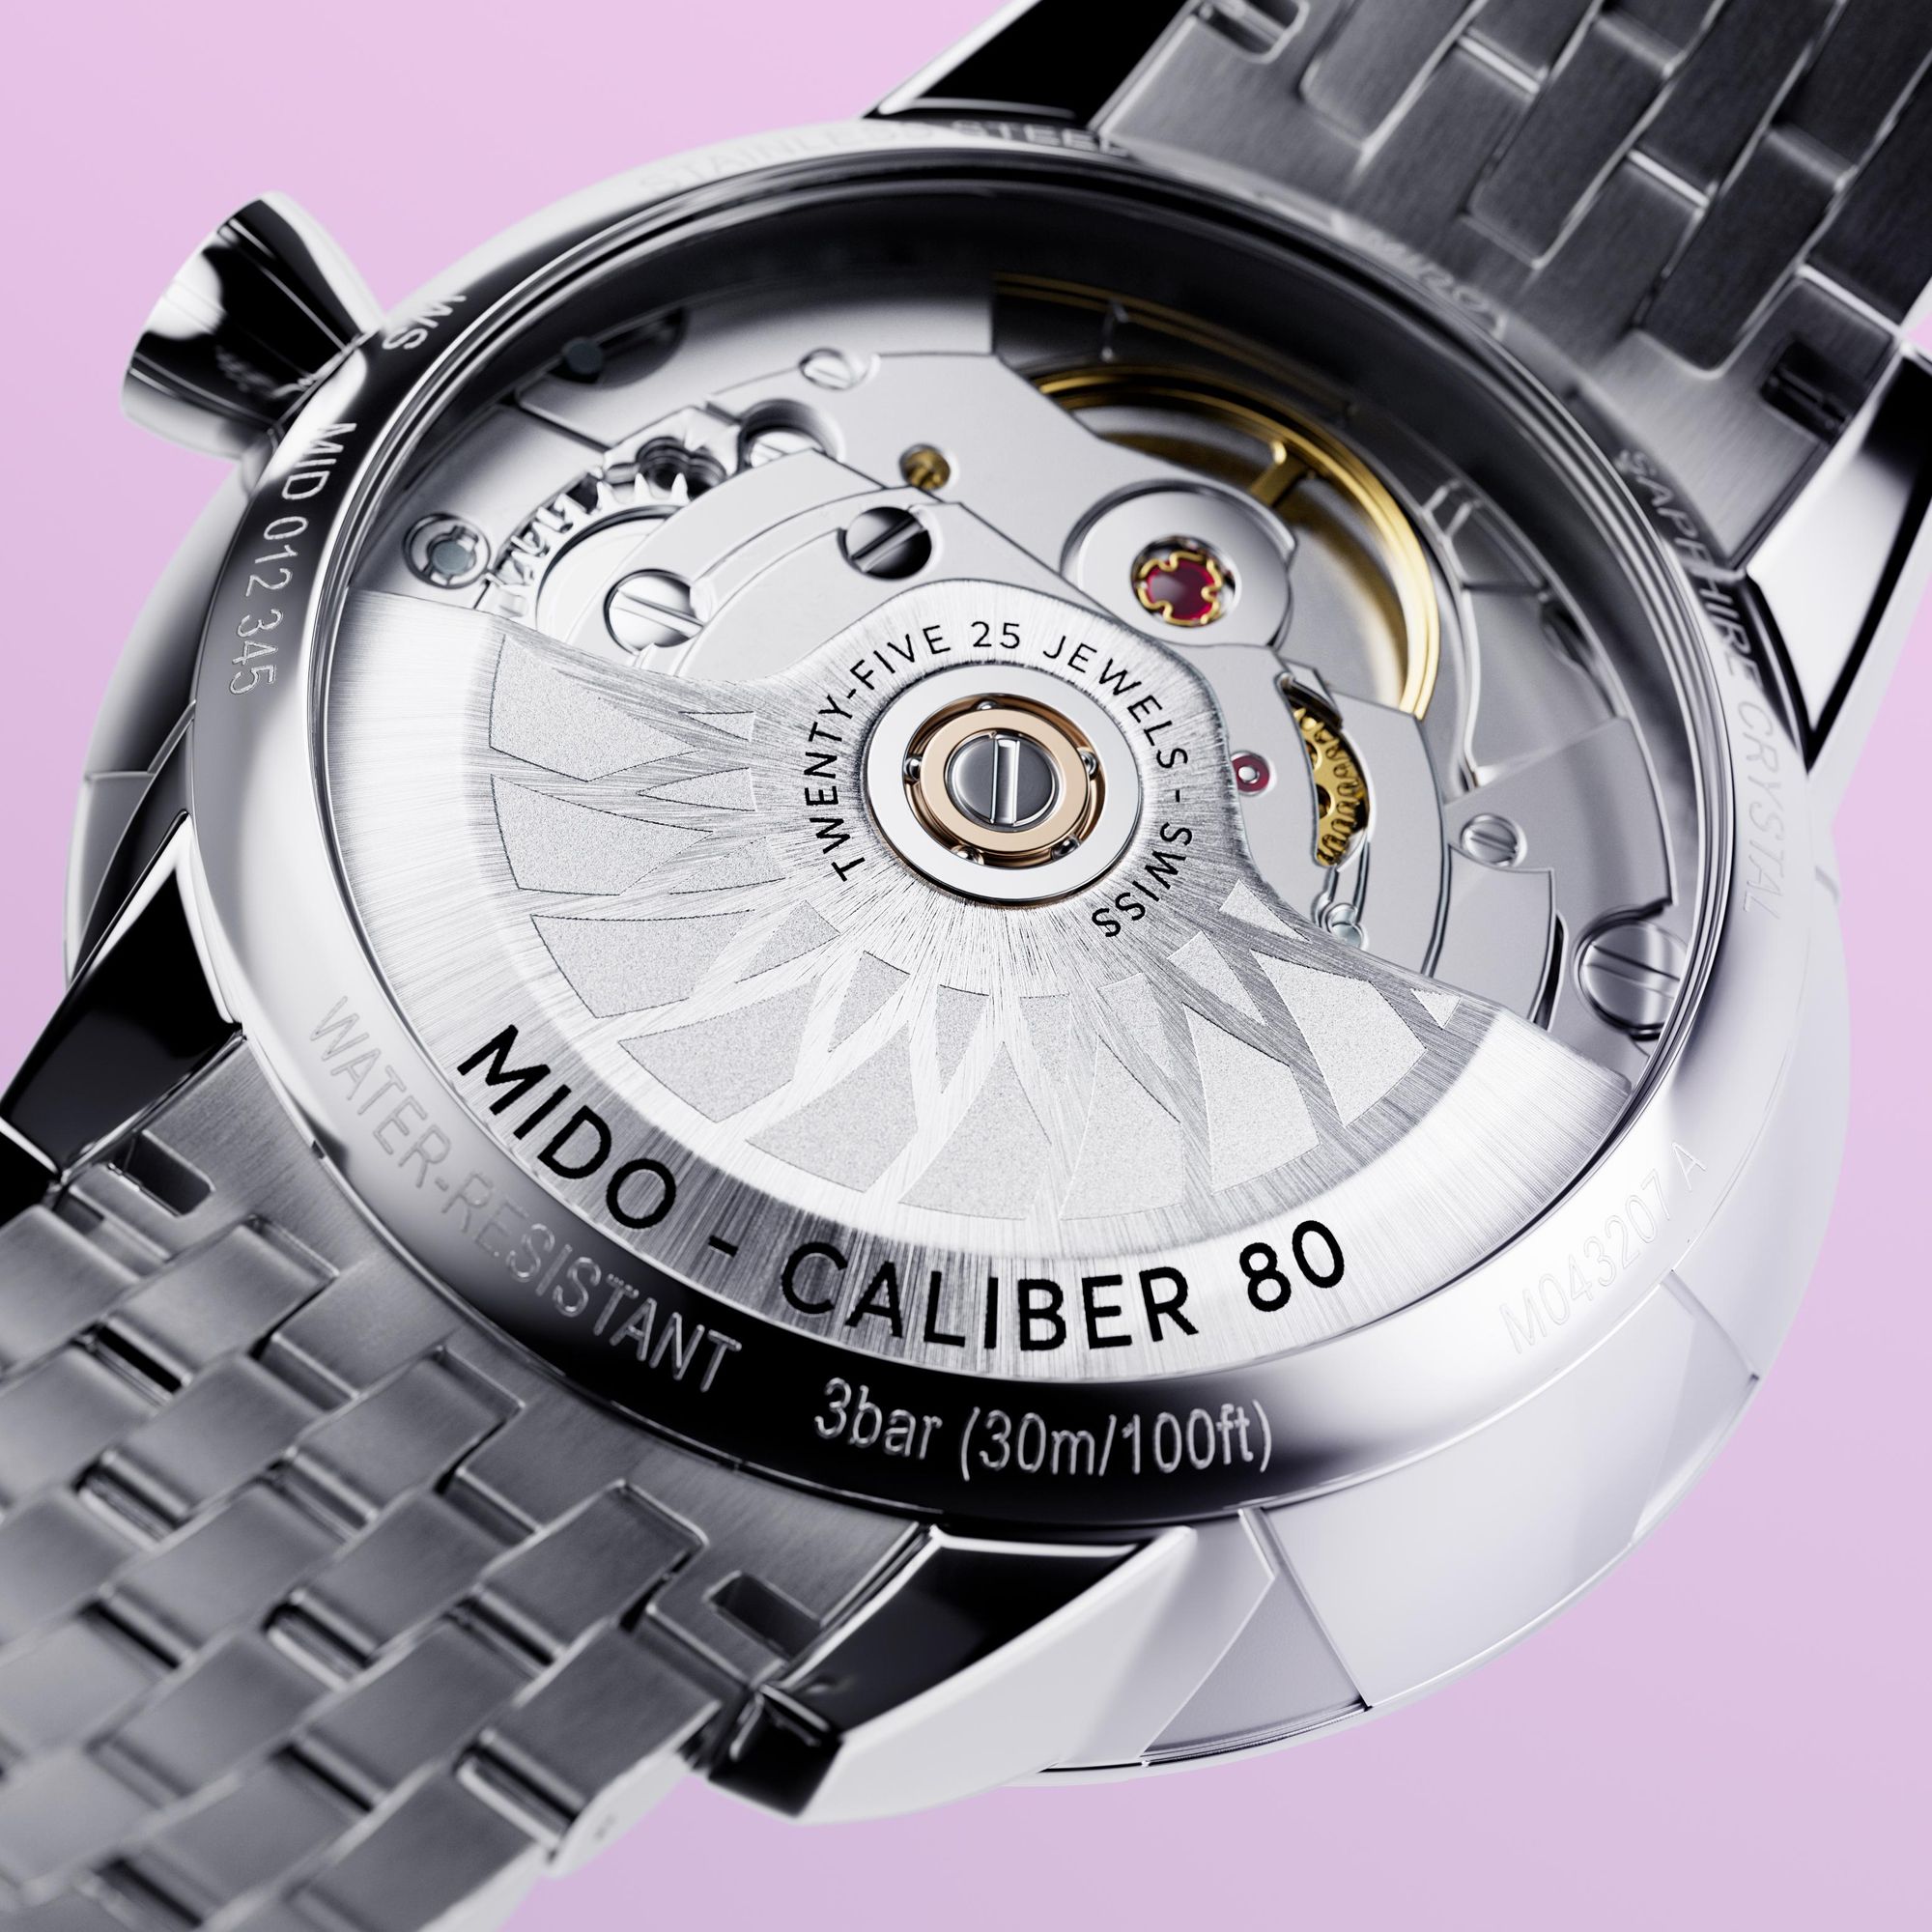 Mido Rainflower Automatic M0432071110600 Automatisch horloge voor dames